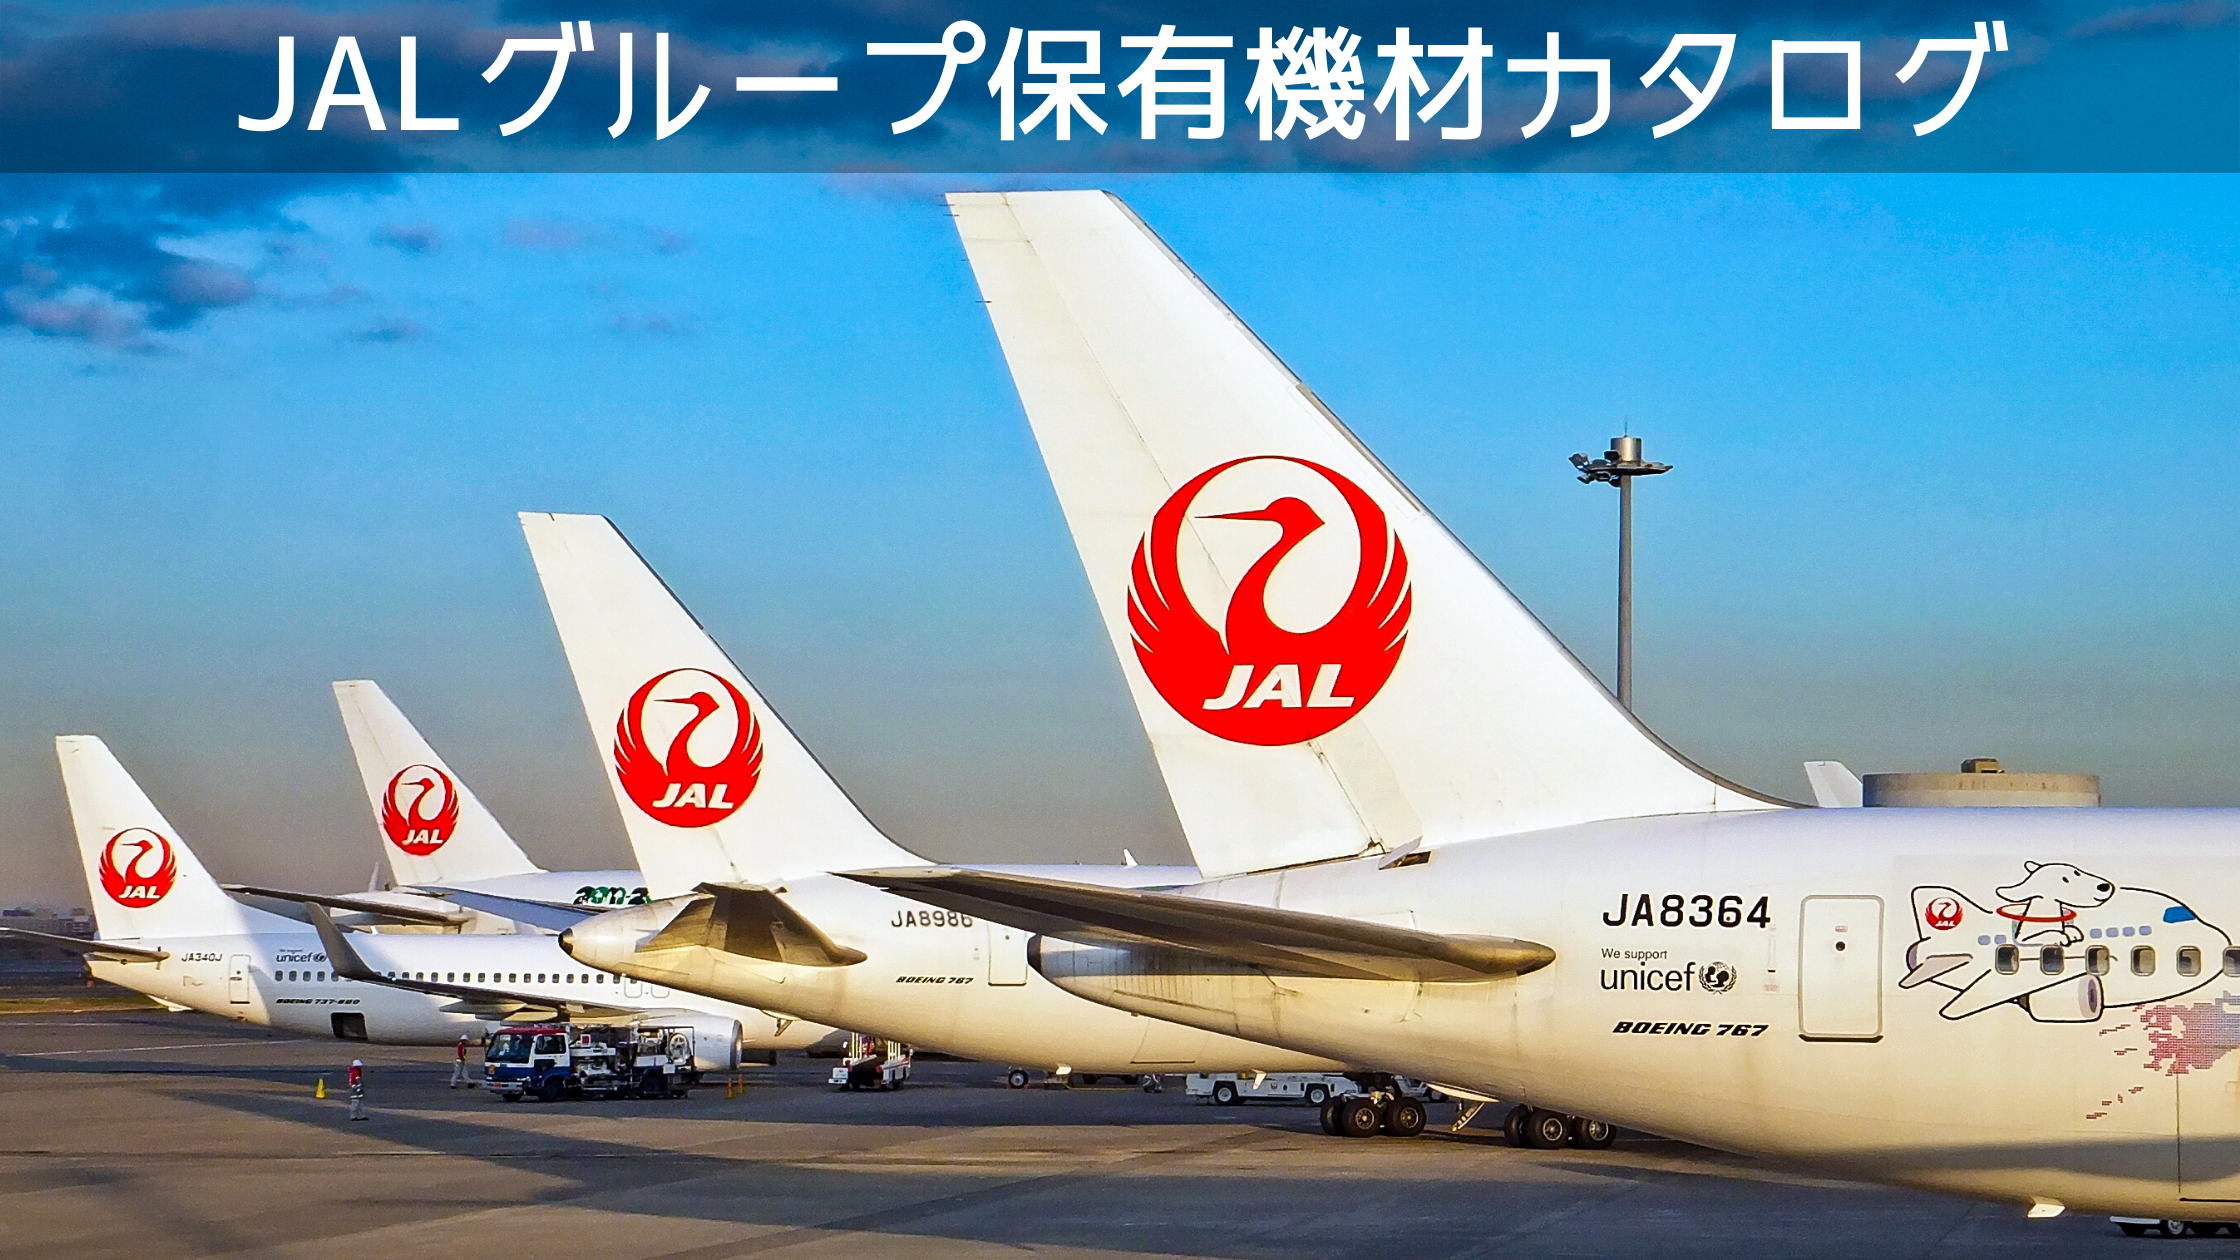 21年6月最新版 全15種類 日本航空 Jal グループ保有機材フリートカタログ P Wエンジン記載あり シテイリョウコウ